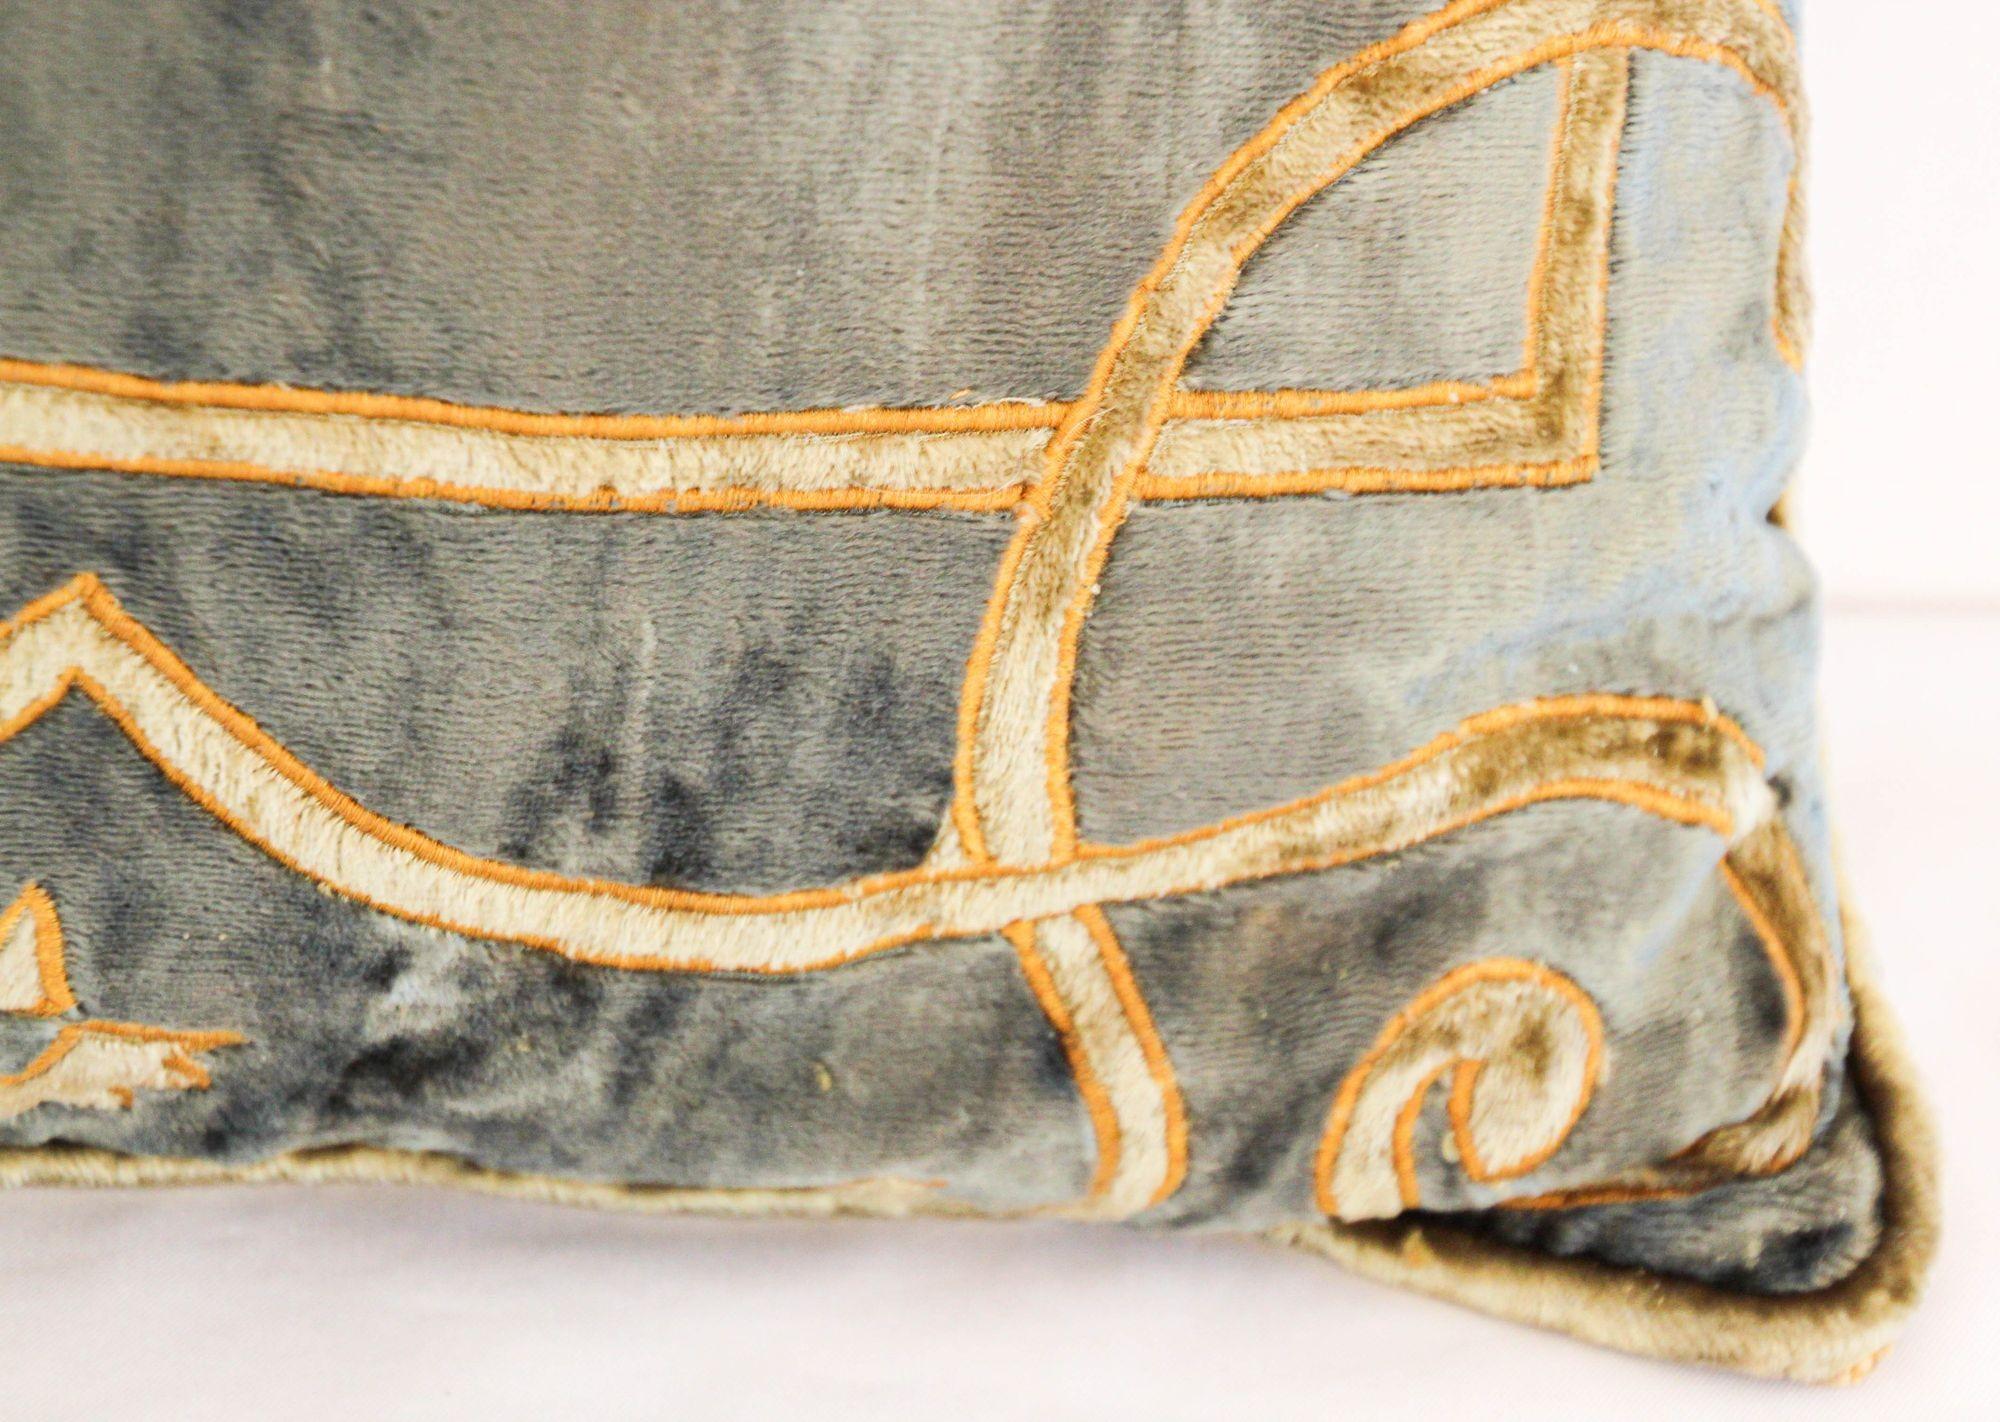 Style baroque, oreiller en velours bleu et or, appliques élaborées.
Coussins d'accent décoratifs en soie vénitienne avec décor mauresque baroque en applique de velours doré sur le devant du coussin.
Applique en velours de soie bleu-gris et or avec